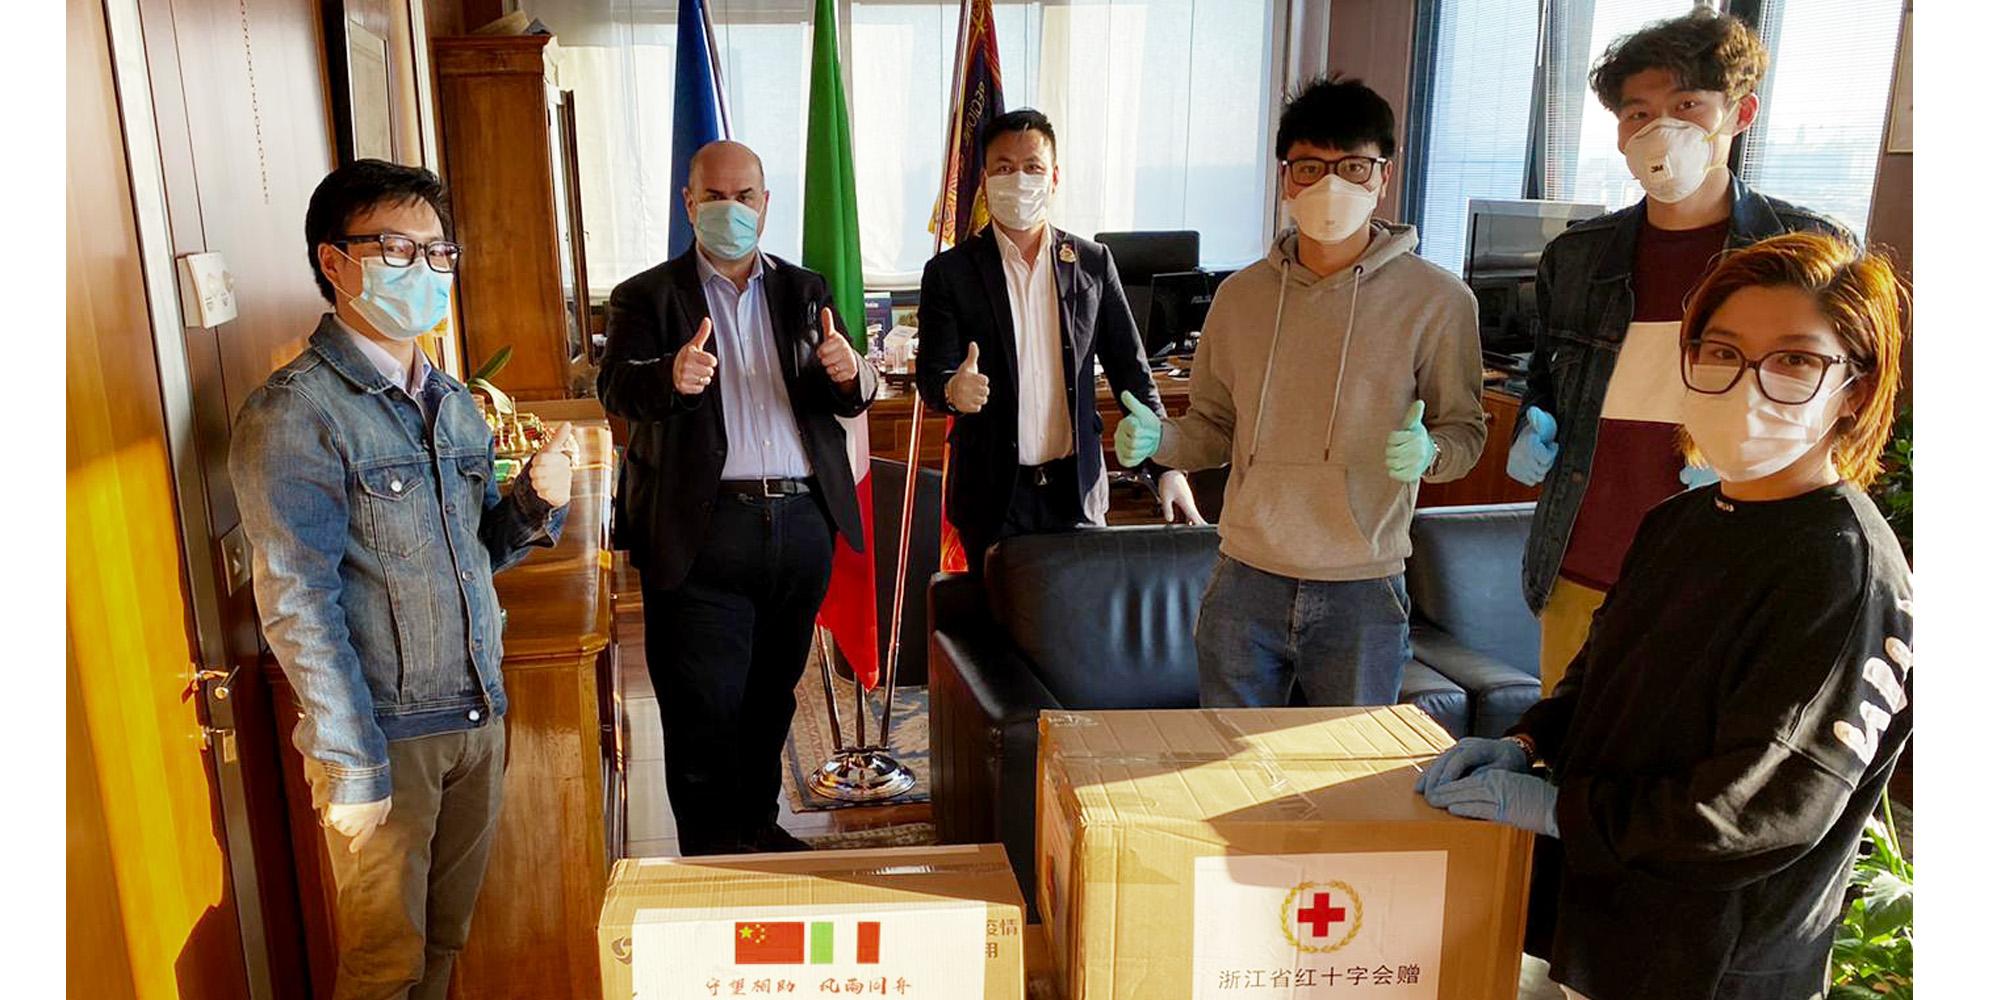 Il presidente Fabio Bui riceve in dono dai cinesi le mascherine